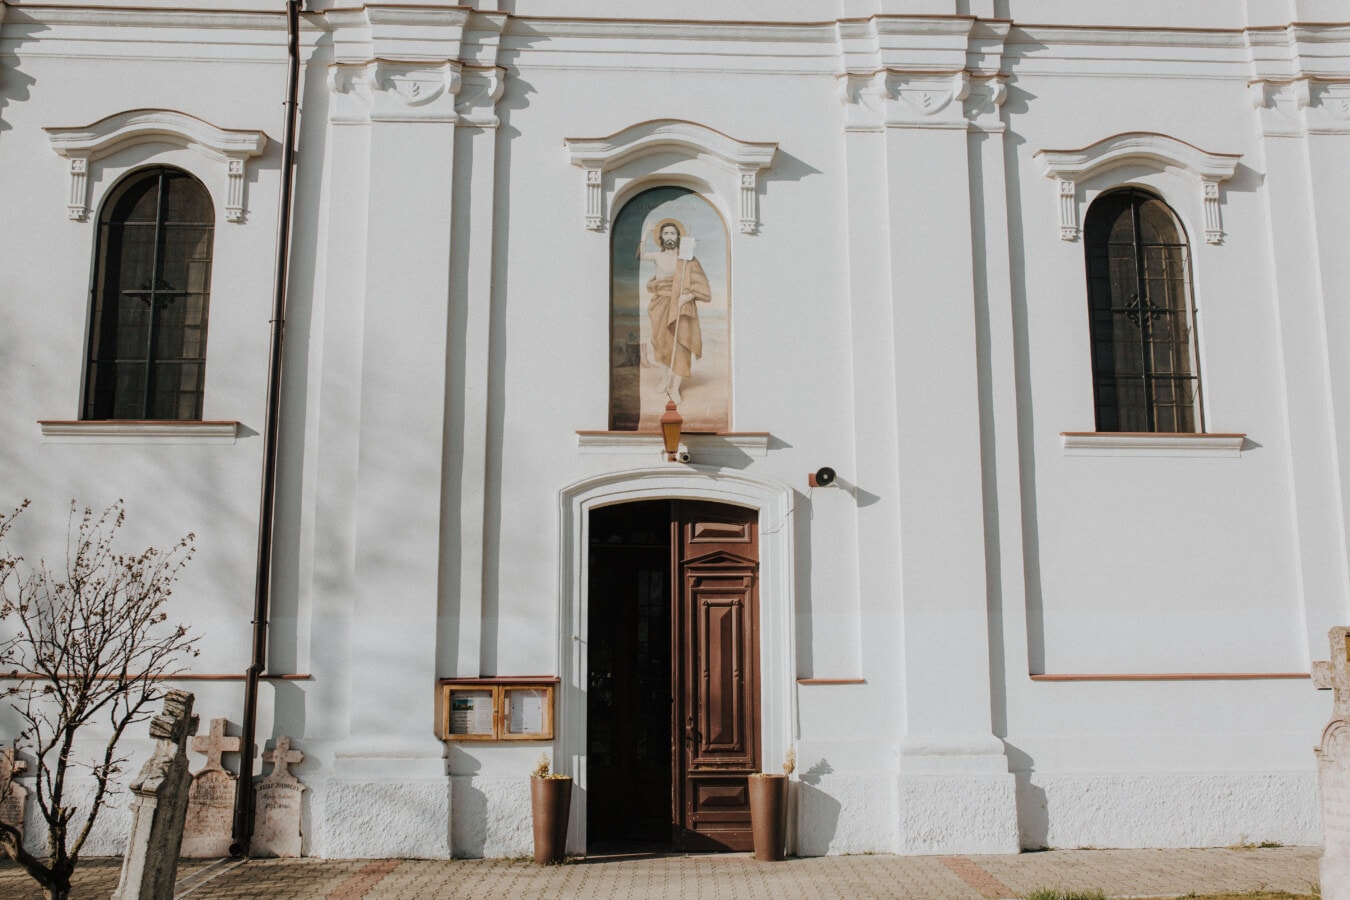 Eingang, vor der Tür, Kirche, orthodoxe, Heilige, weiß, Wand, Malerei, Architektur, Fenster